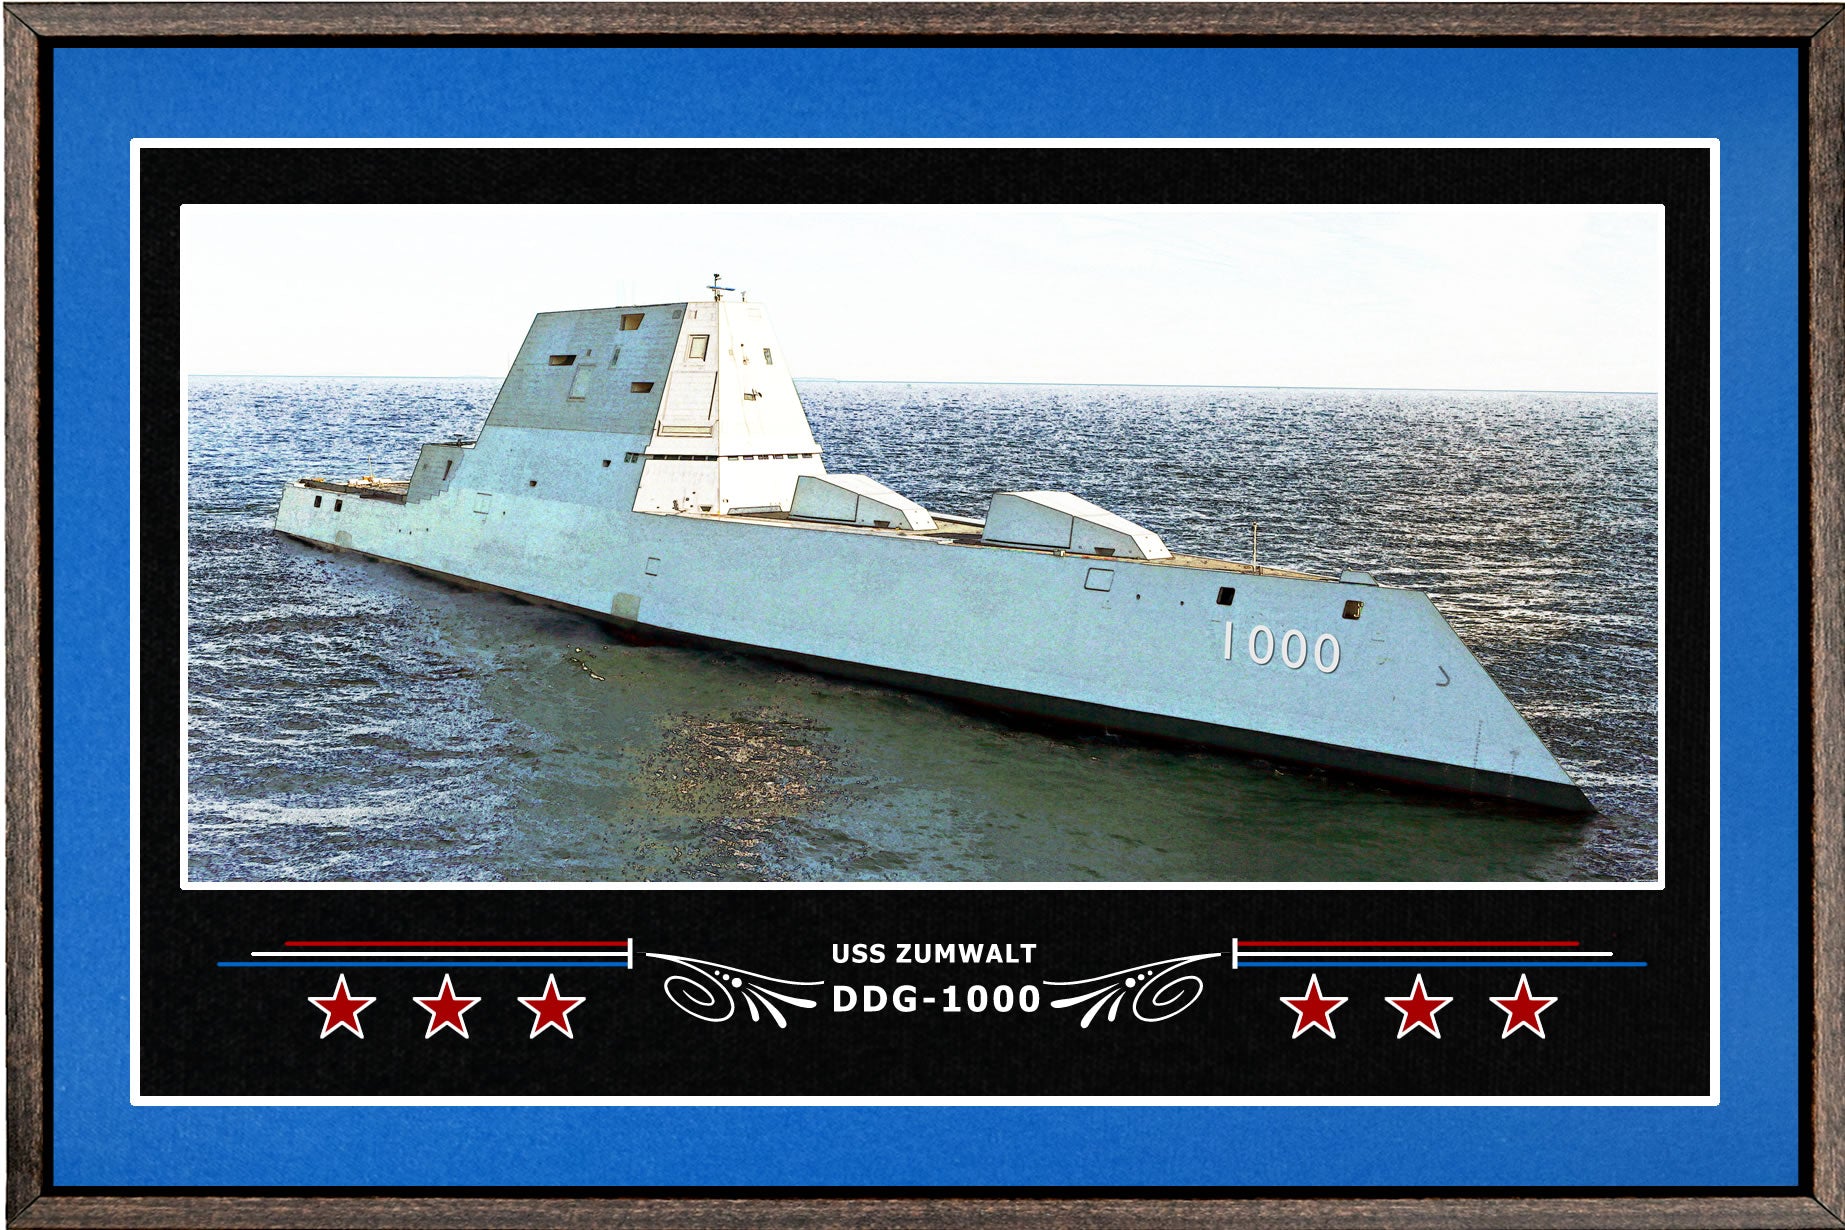 USS ZUMWALT DDG 1000 BOX FRAMED CANVAS ART BLUE